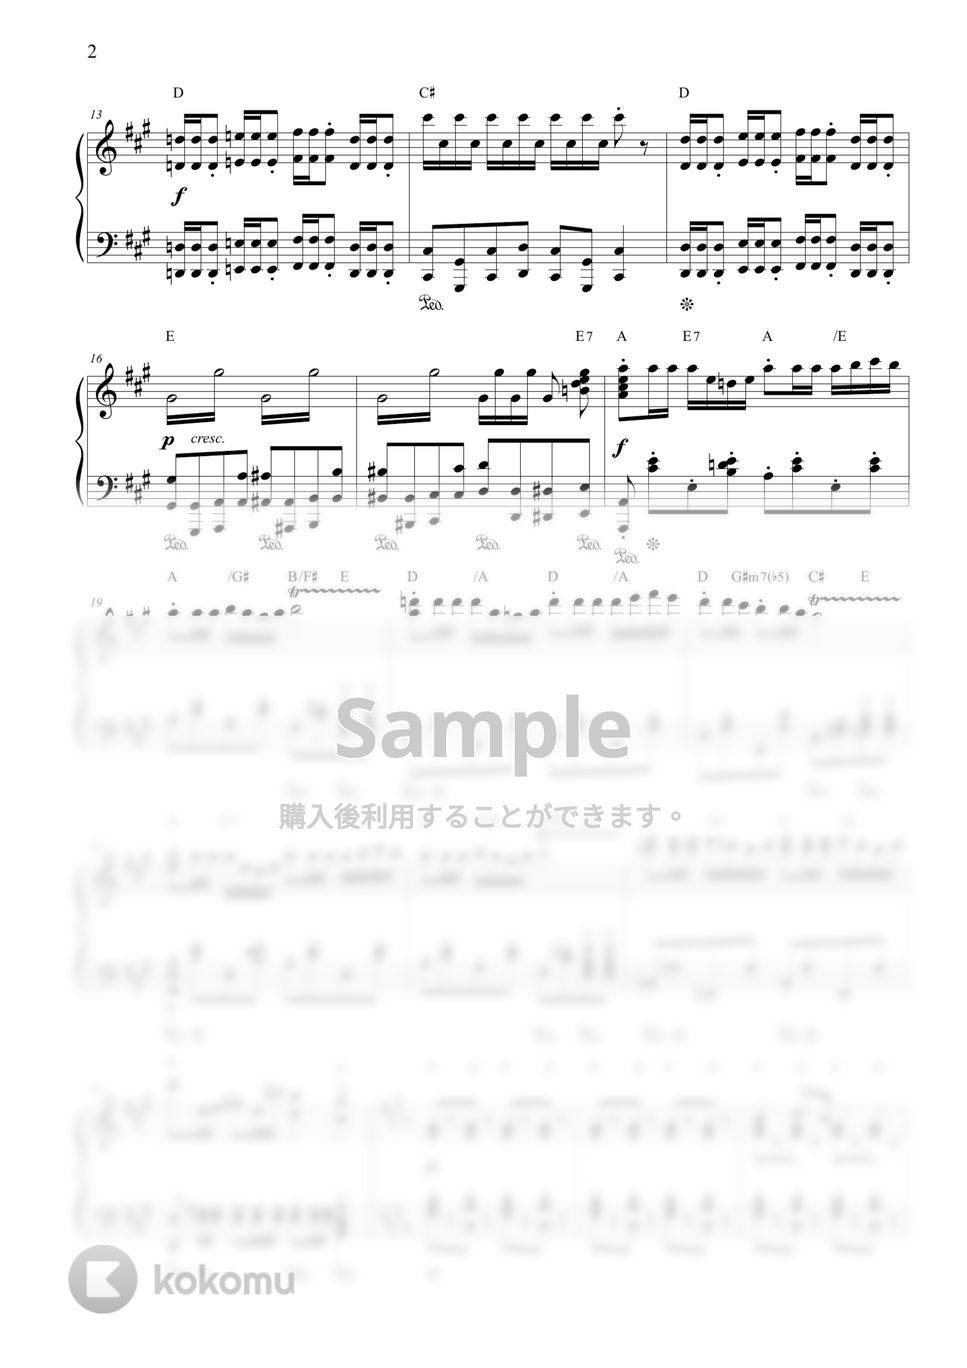 ビゼー - 「カルメン」前奏曲 by CANACANA family